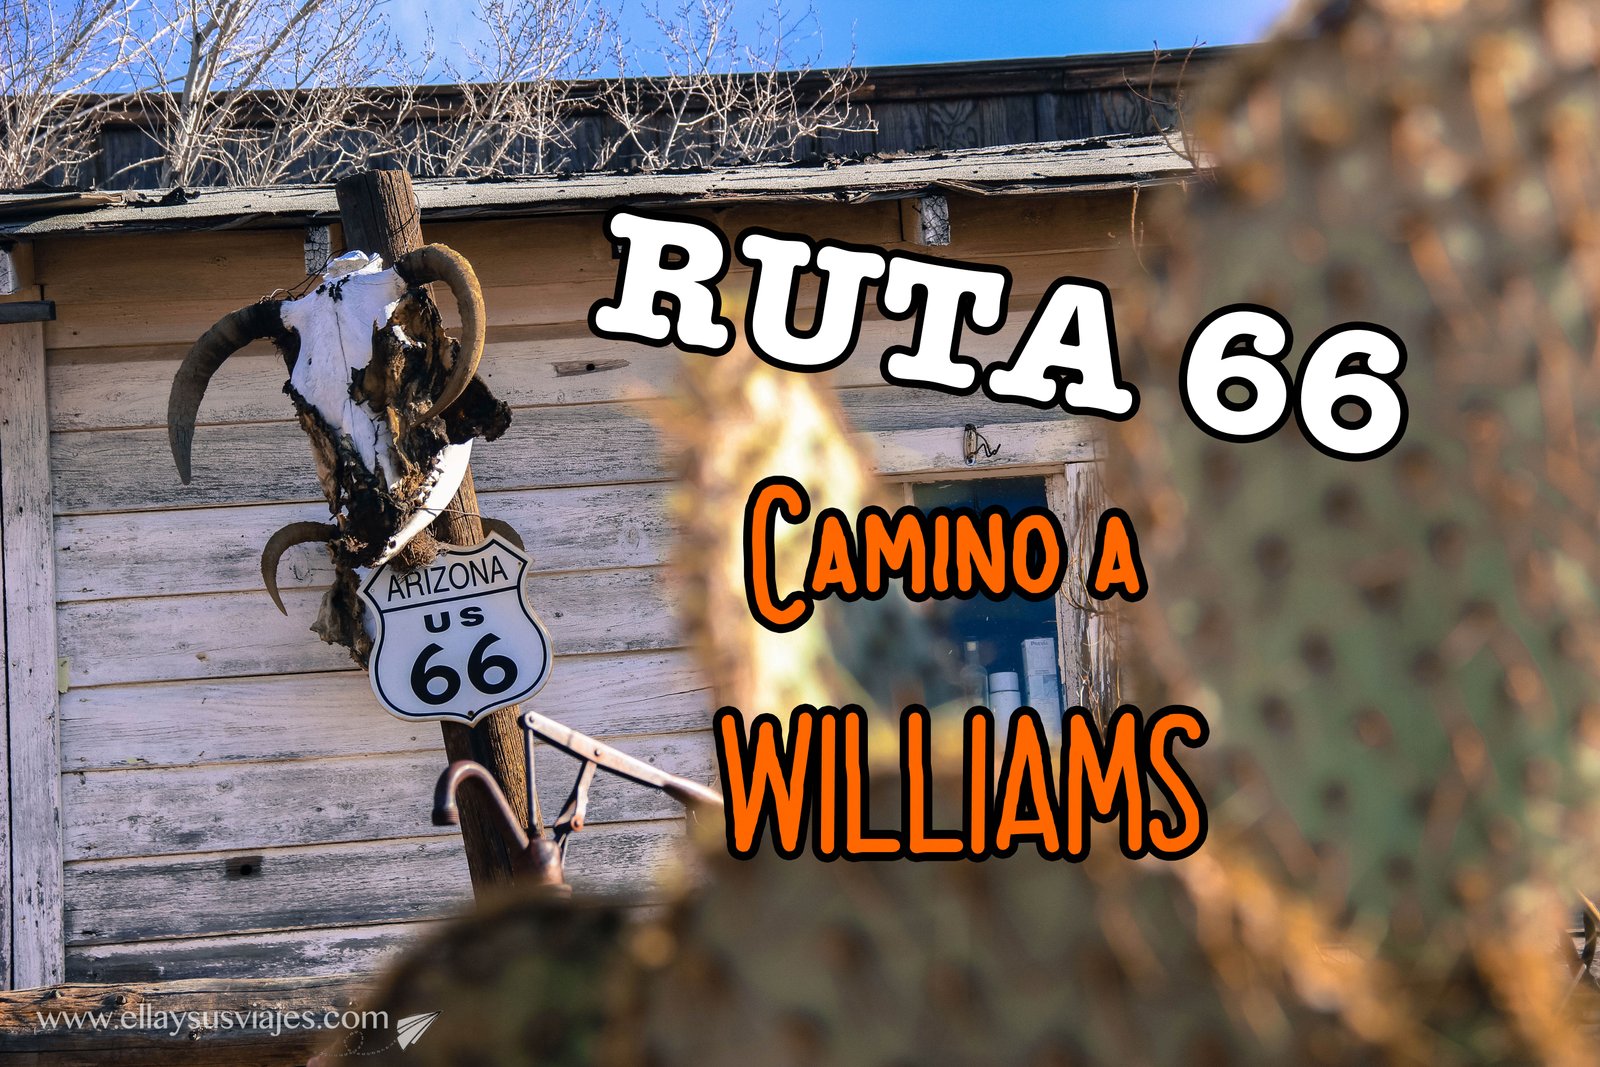 En este momento estás viendo Williams, una ciudad “western” sobre la 66